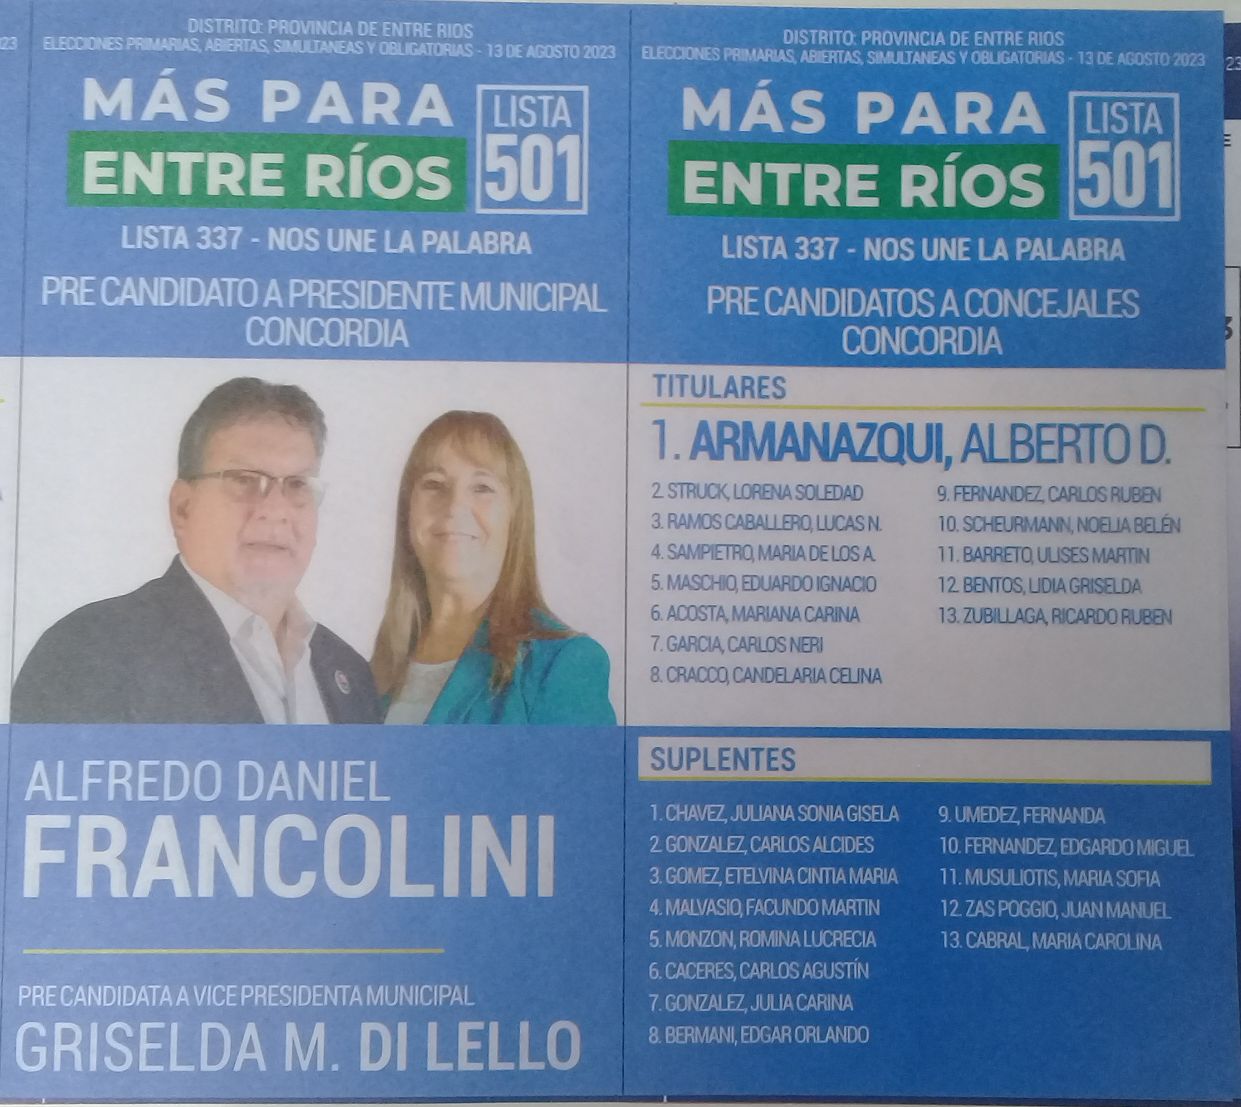 Lista 501: Más Para Entre Ríos - Alfredo Daniel Francolini.